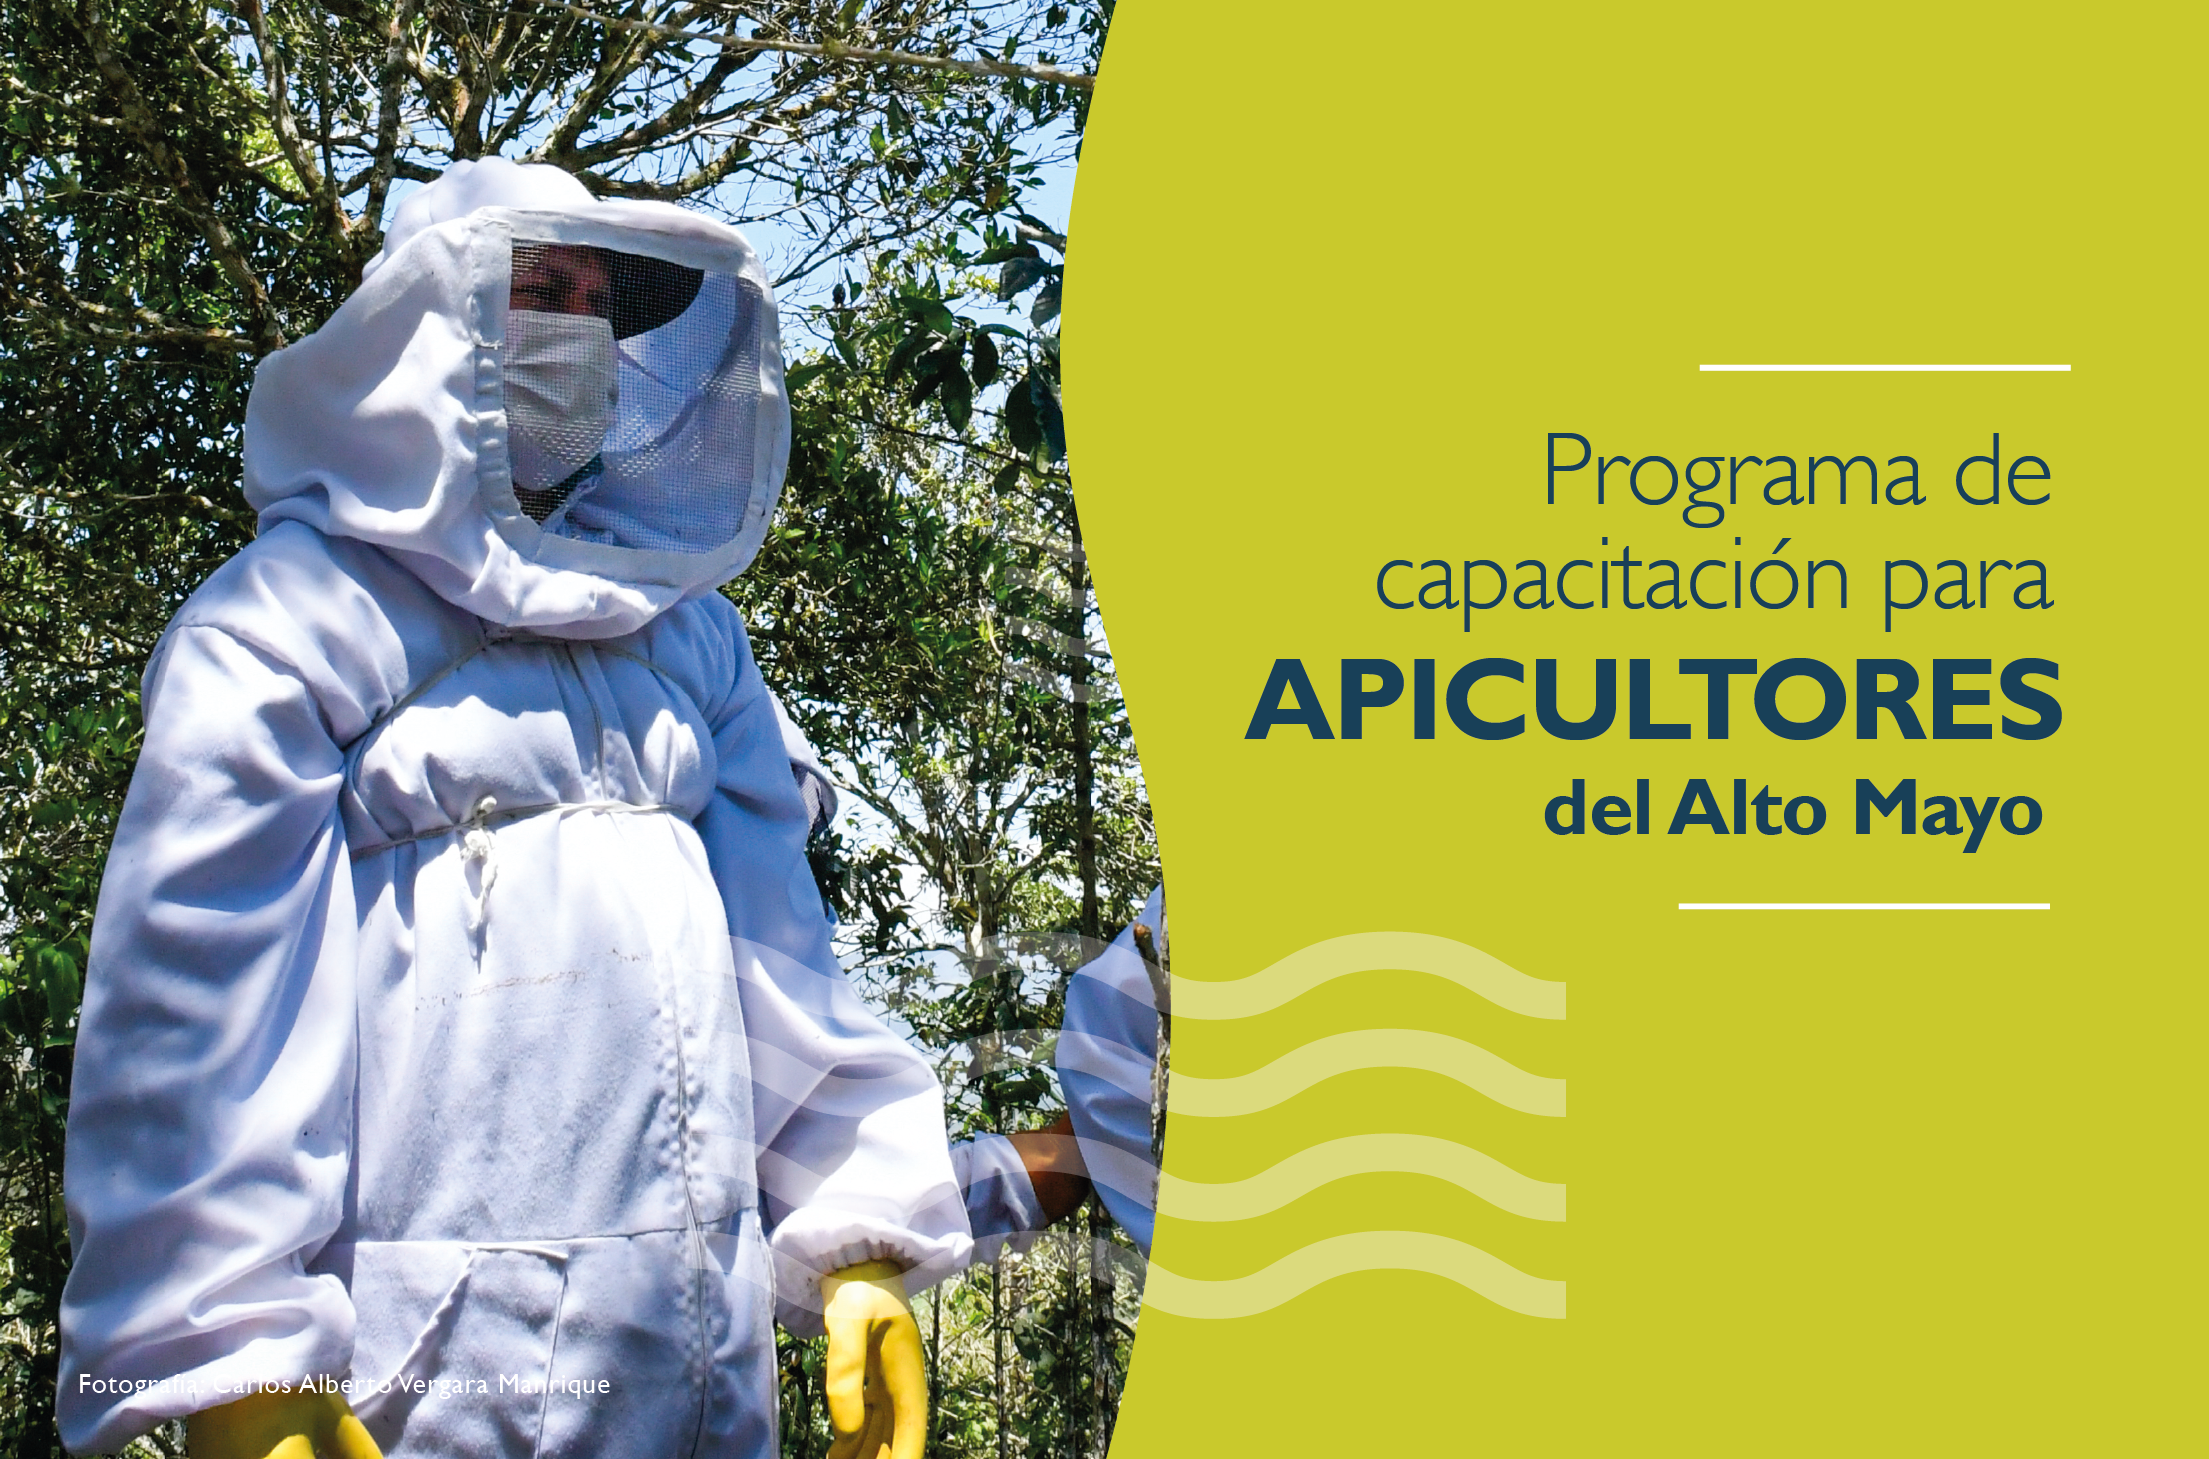 Course Image 2021 Programa de capacitación para apicultores del Alto Mayo